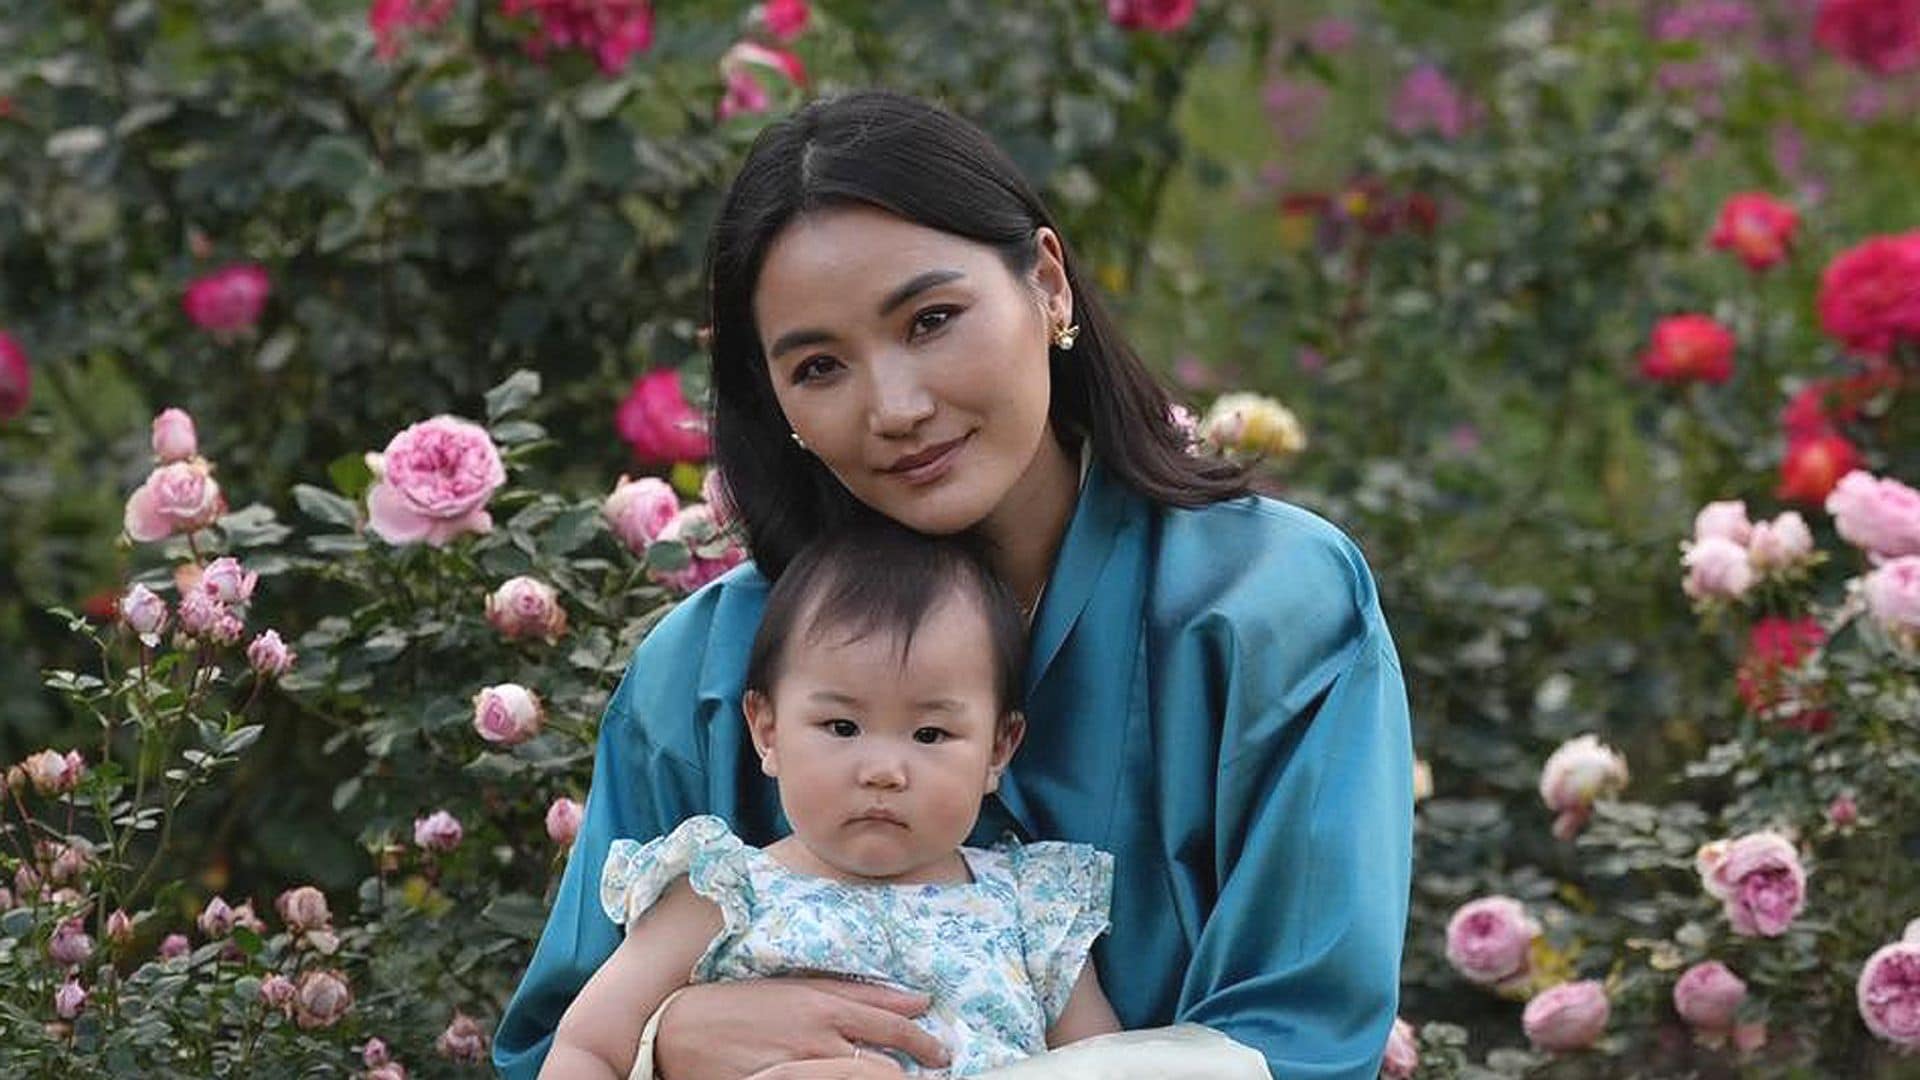 La reina de Bután cumple 34 años y lo celebra con un posado junto a su tercera hija